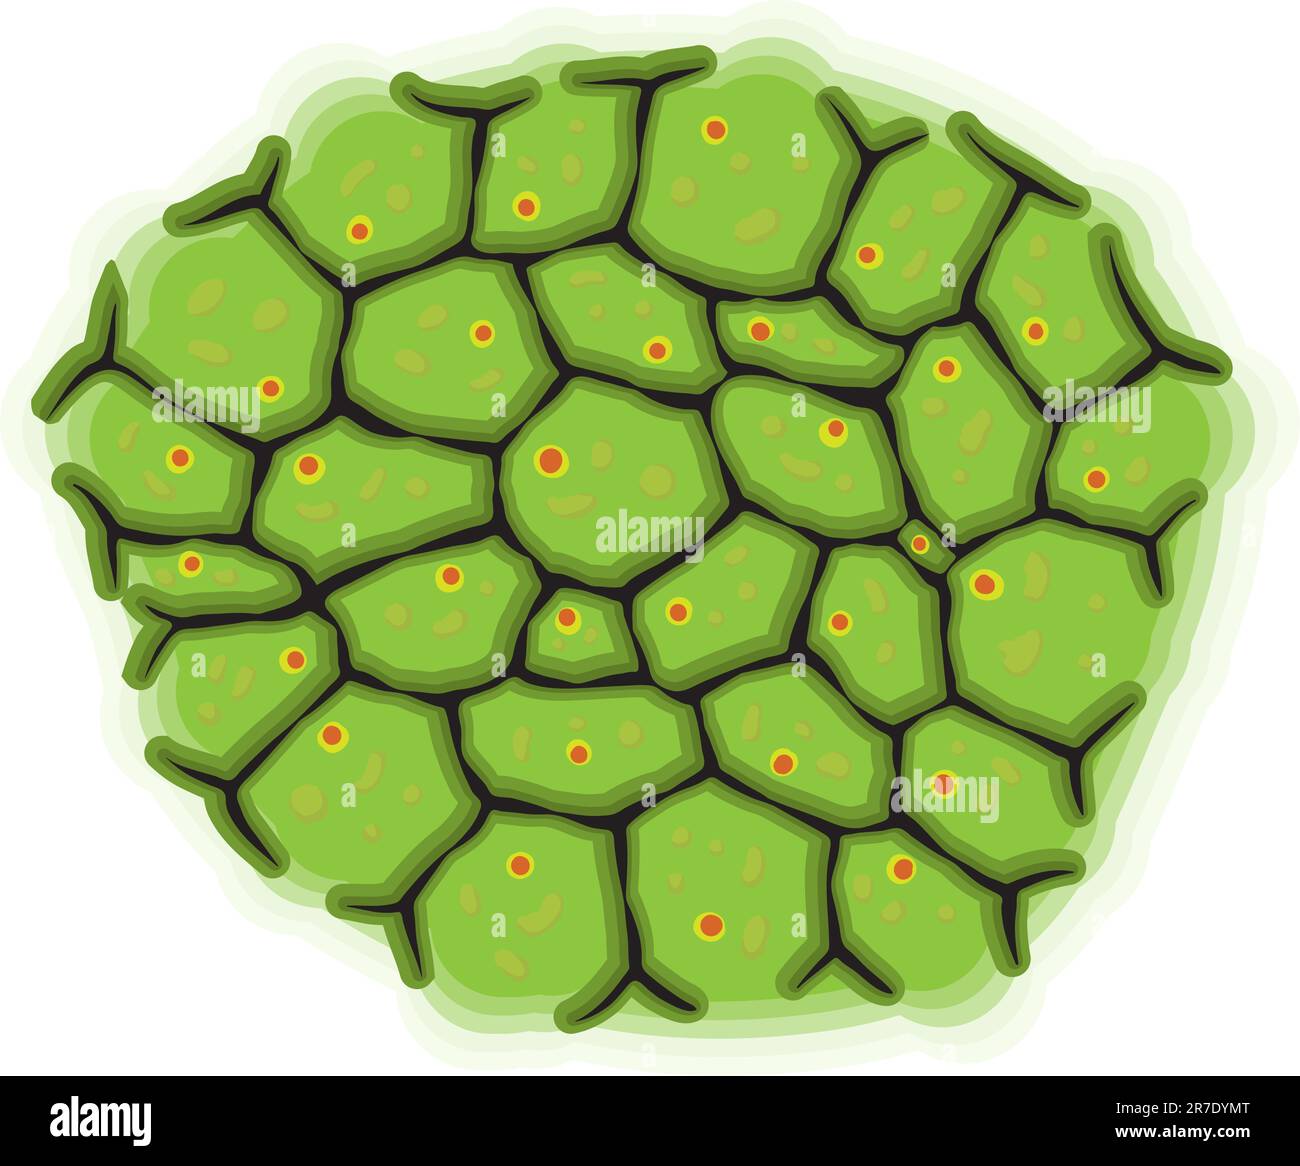 Vektordarstellung - eine schematische Darstellung lebender Zellen Stock Vektor